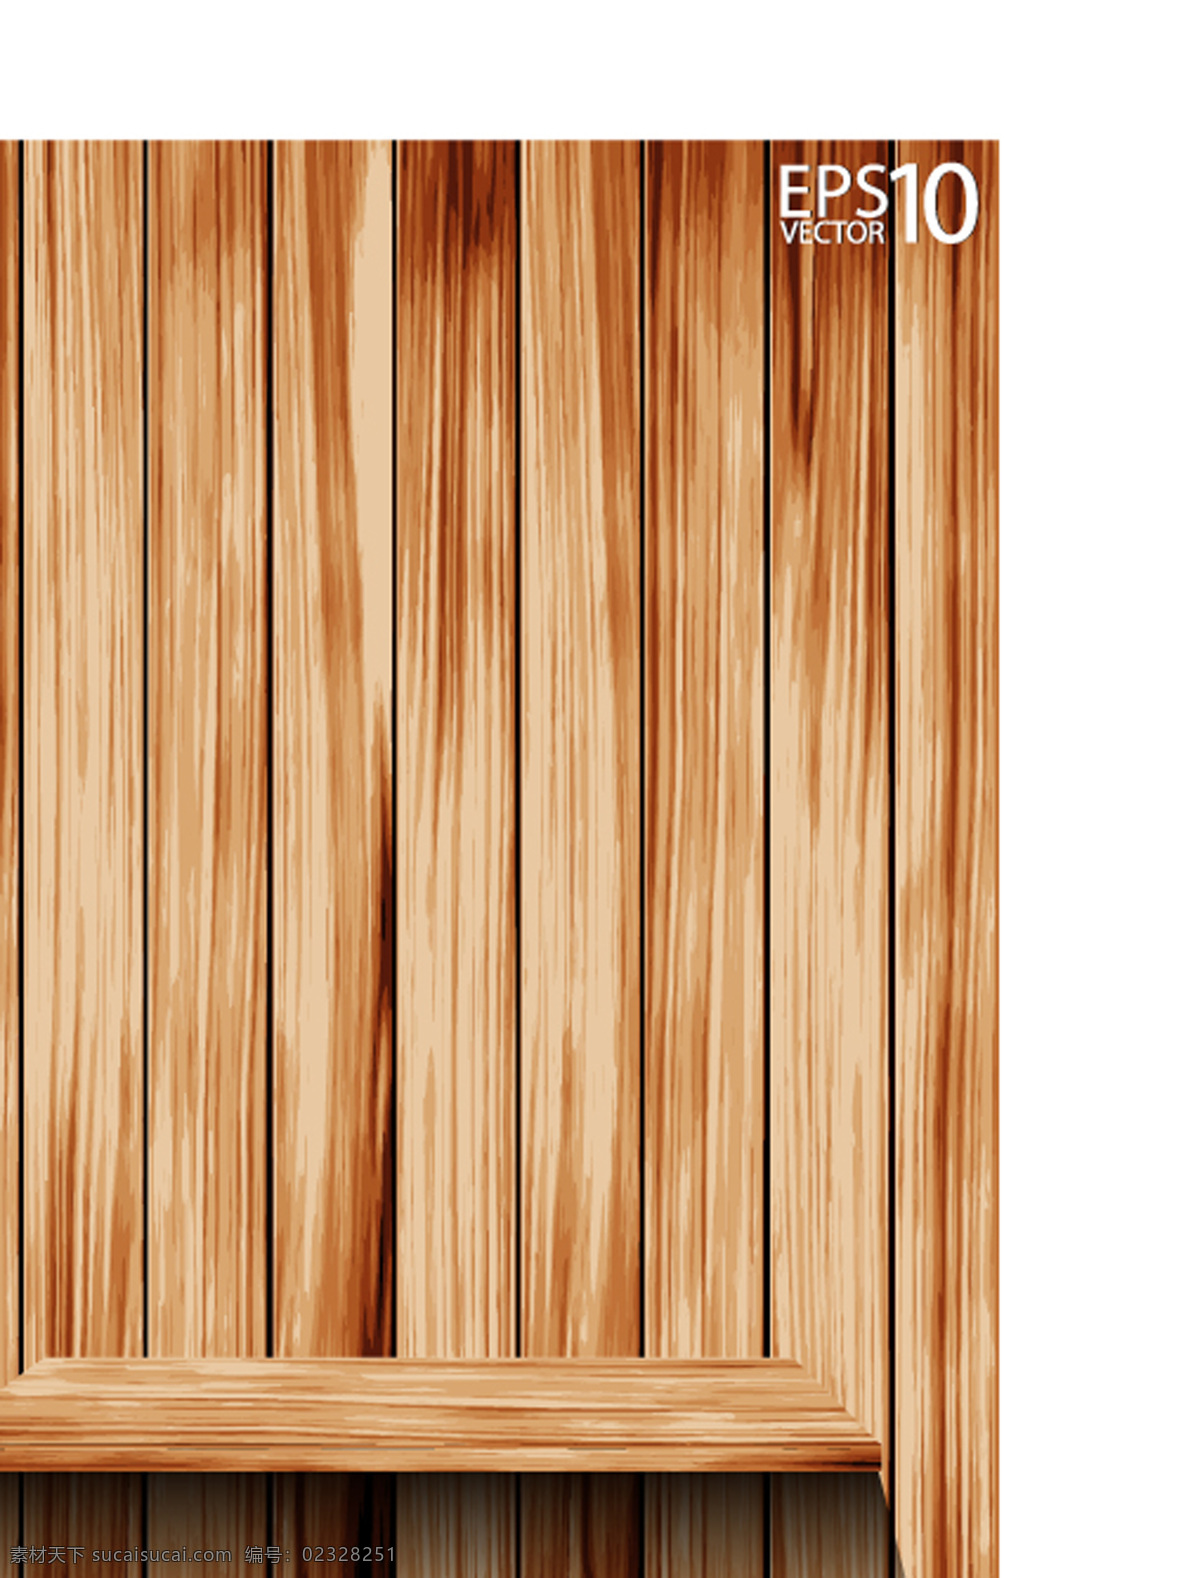 木板 矢量 背景 柜子 木头 木纹 矢量素材 纹路 颜颜丶一个人 矢量图 其他矢量图